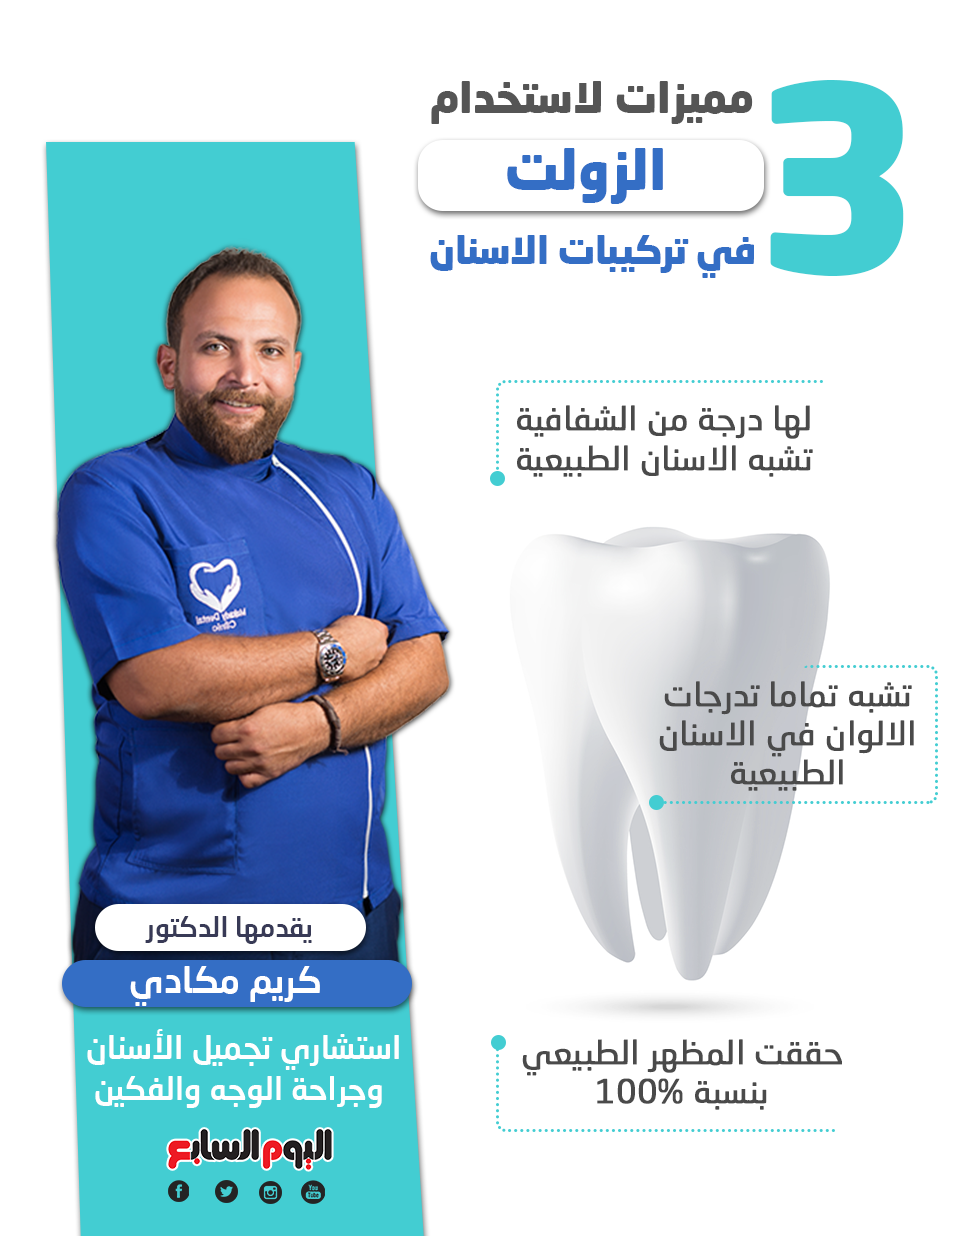 3 مميزات لاستخدام " الزولت" في تركيبات الاسنان